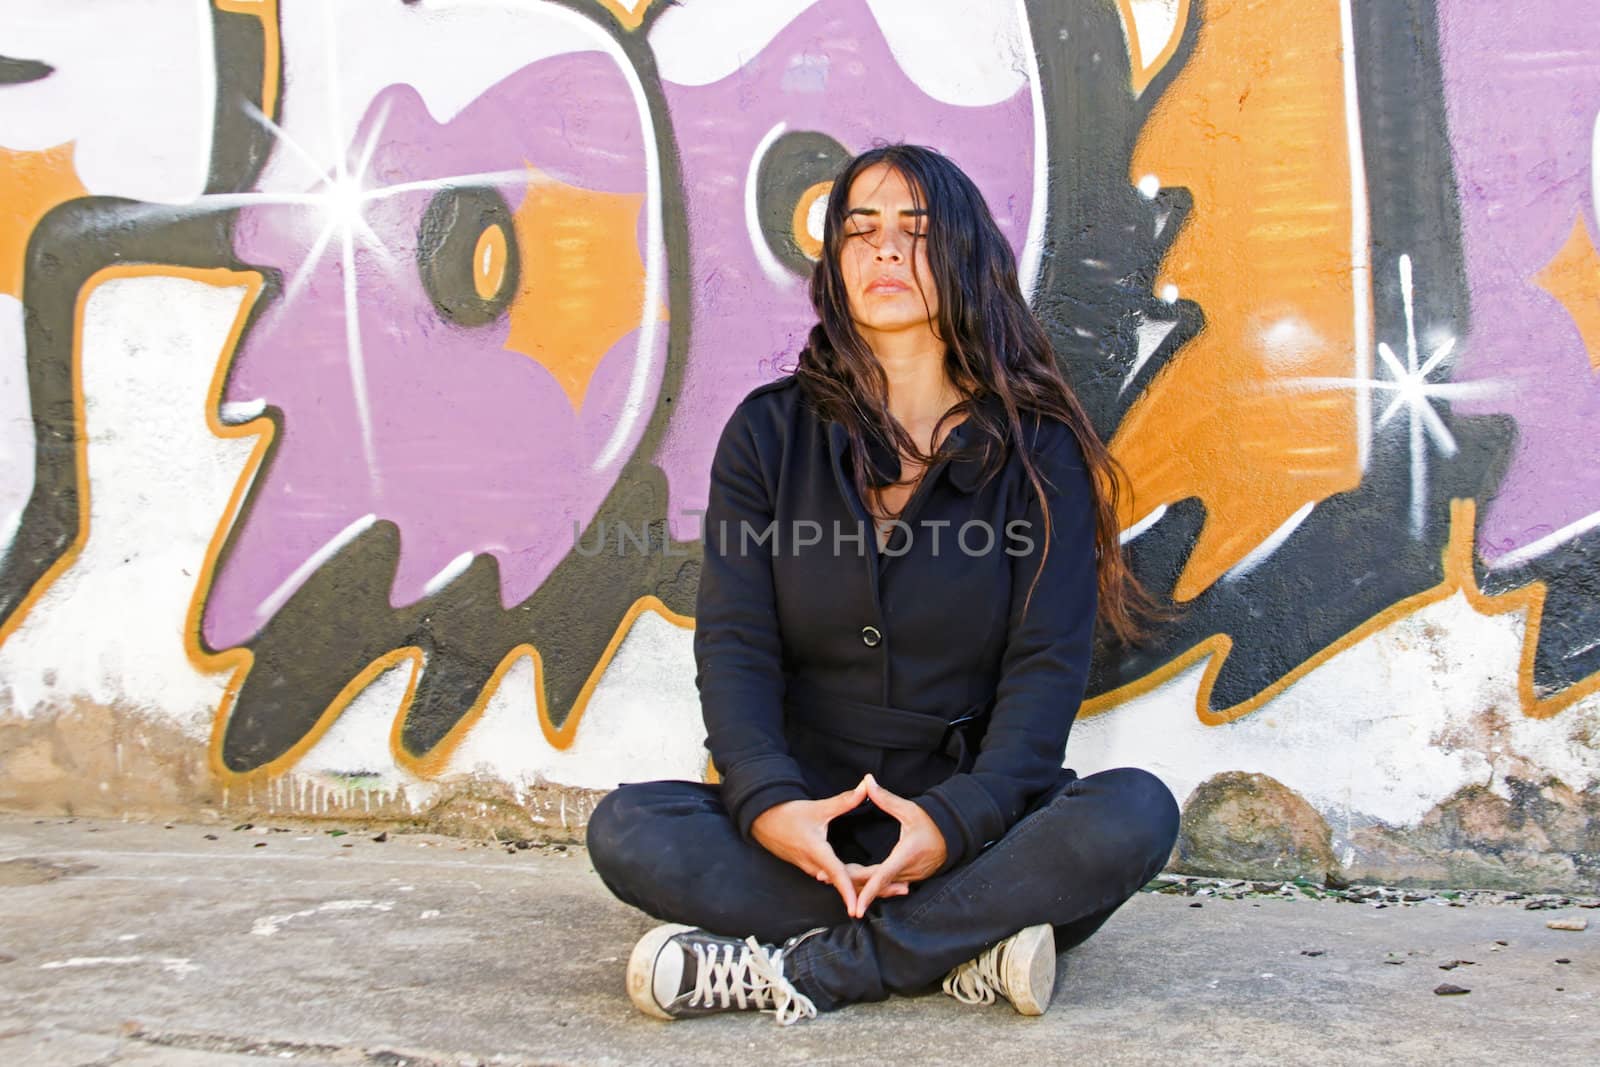 Young woman meditating at a graffiti brick wall by devy